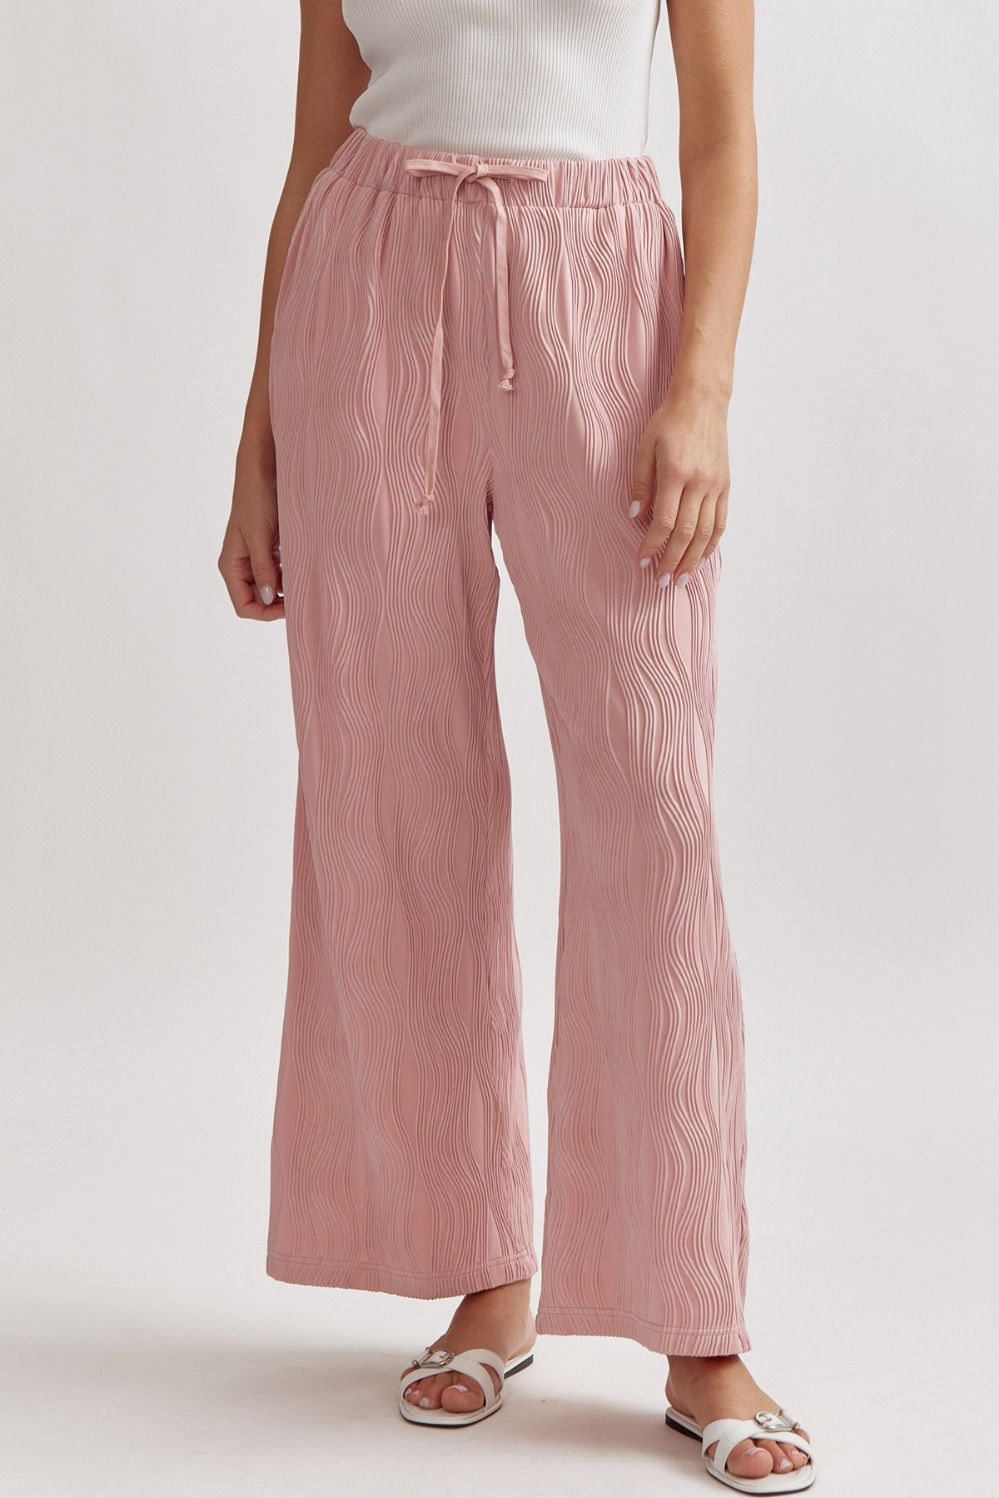 Caroline Wave Textured Drawstring Pants - Blush Pink